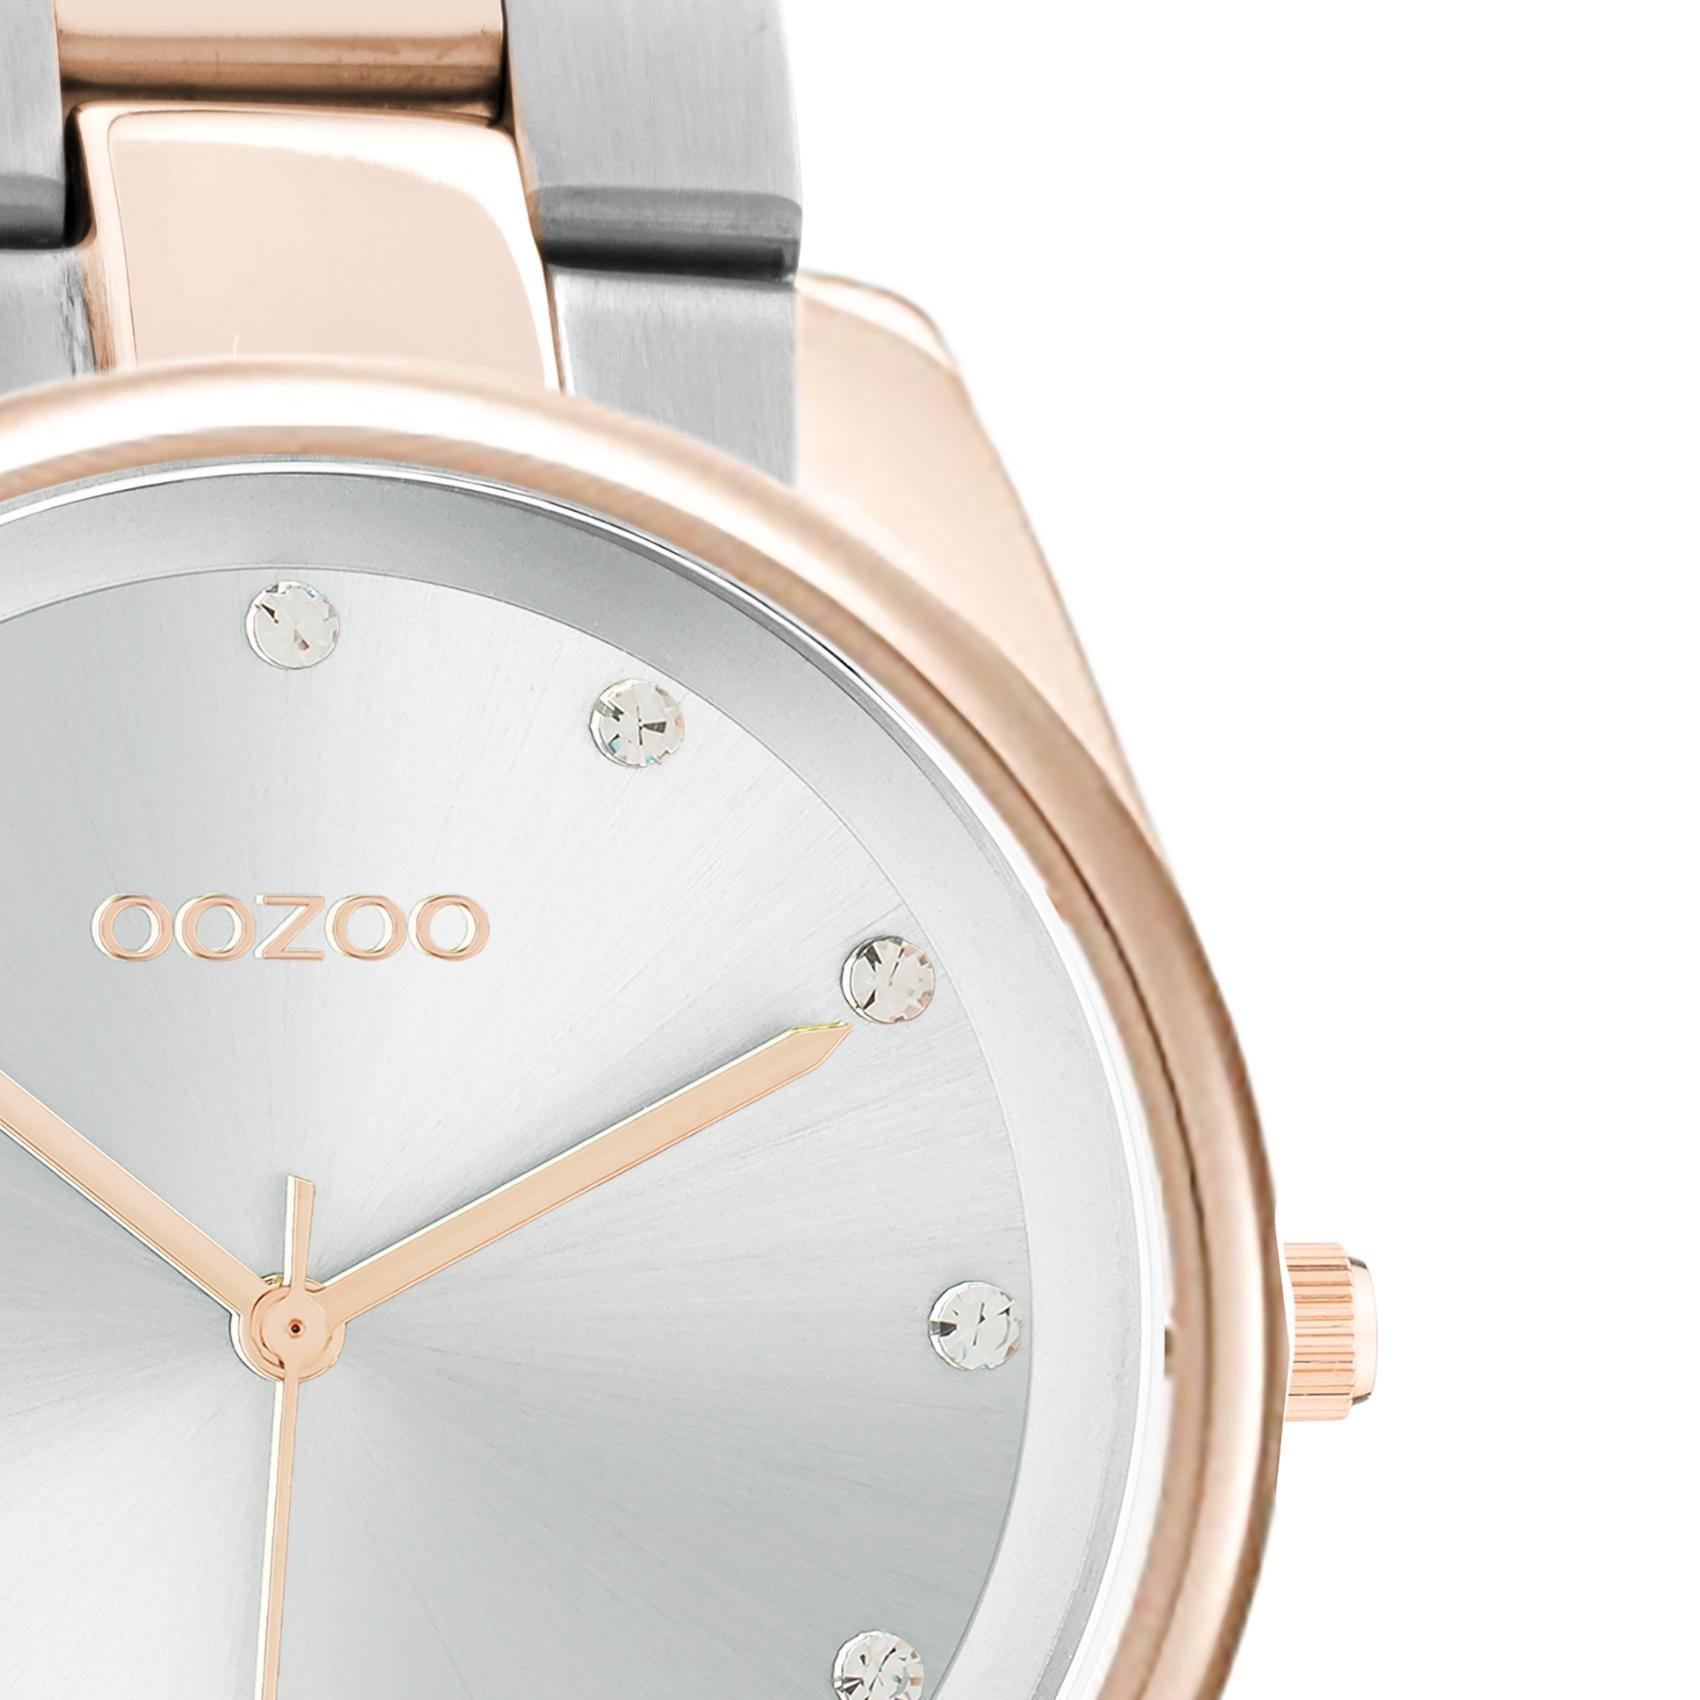 Ρολόι Oozoo C10964 με ασημί-ροζ χρυσό ατσάλινο μπρασελέ, ασημί καντράν διαμέτρου 36mm με ζιργκόν και μηχανισμό μπαταρίας quartz.